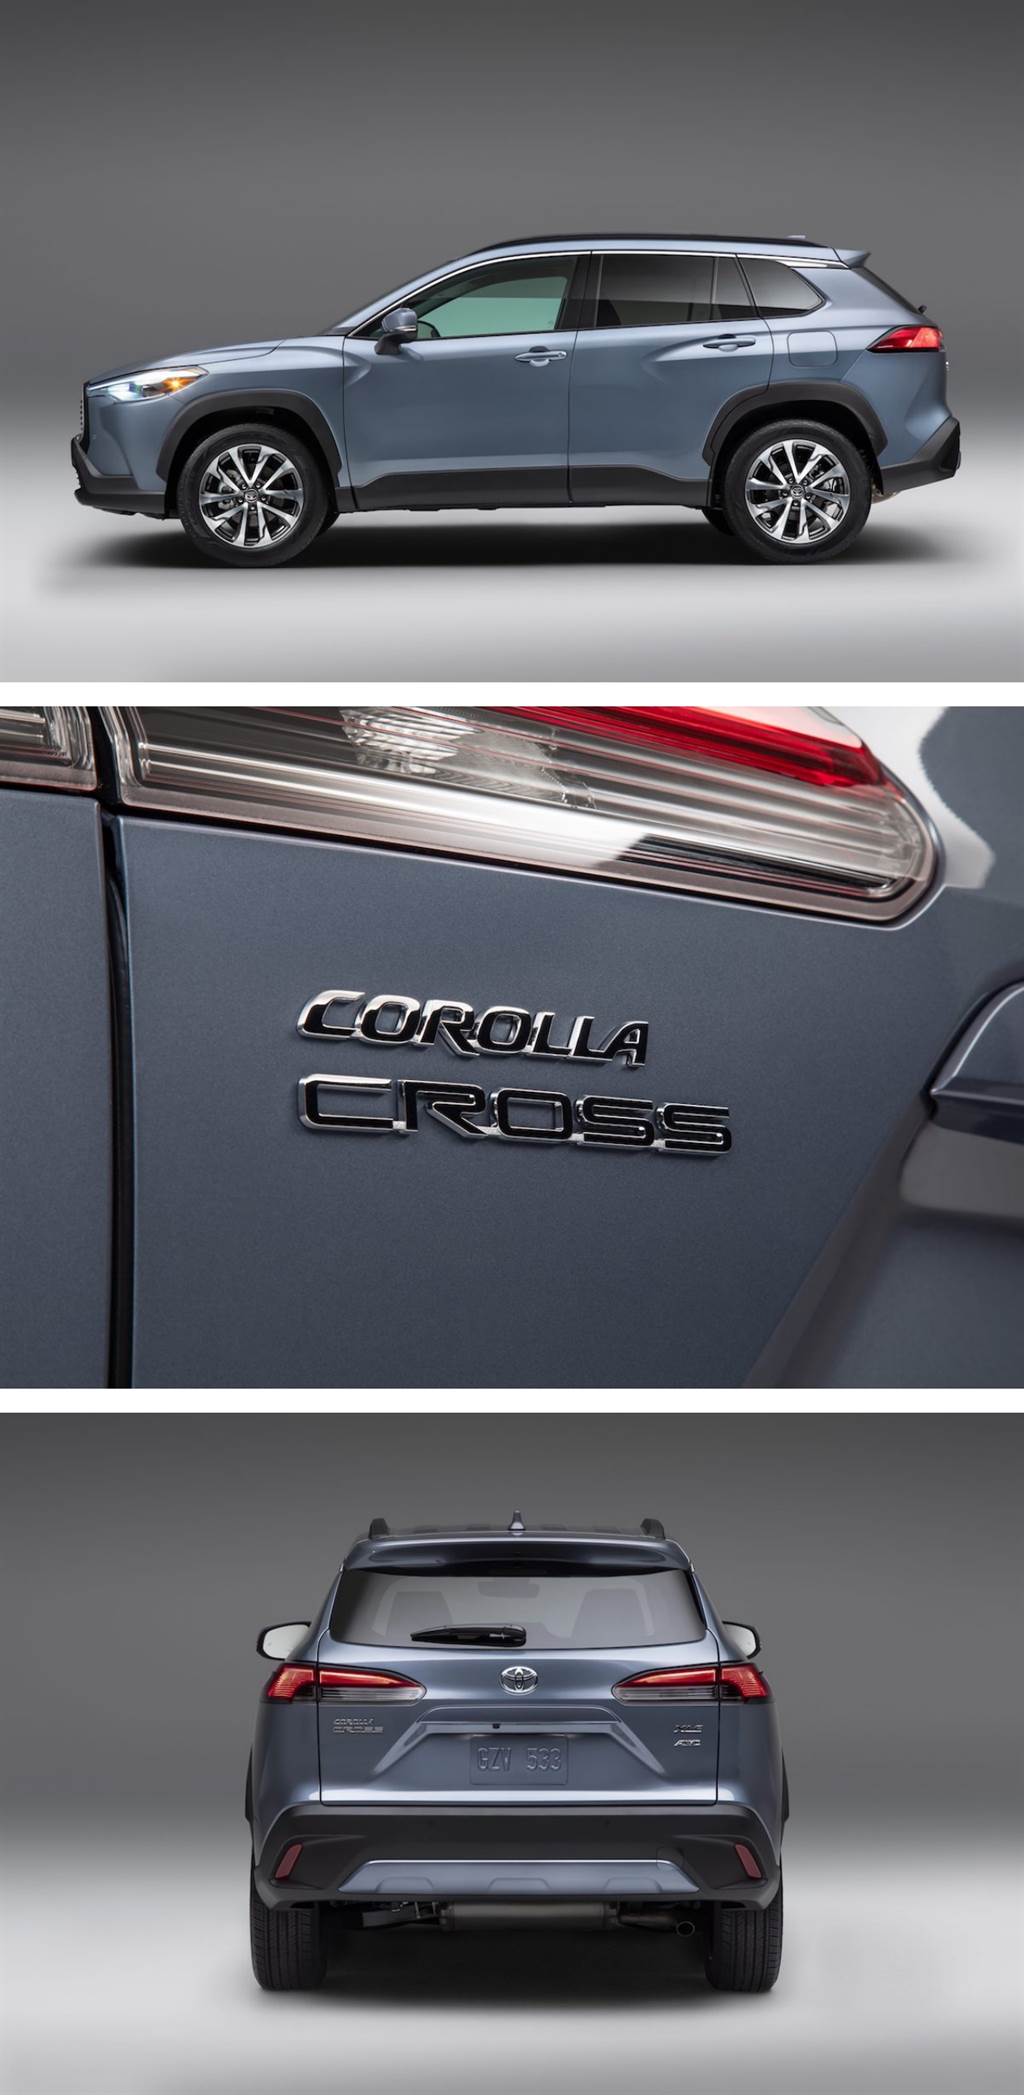 主力 2.0 Dynamic Force 引擎、AWD 配置與 EBD 電子手煞，Toyota Corolla Cross 美規版本亮相
